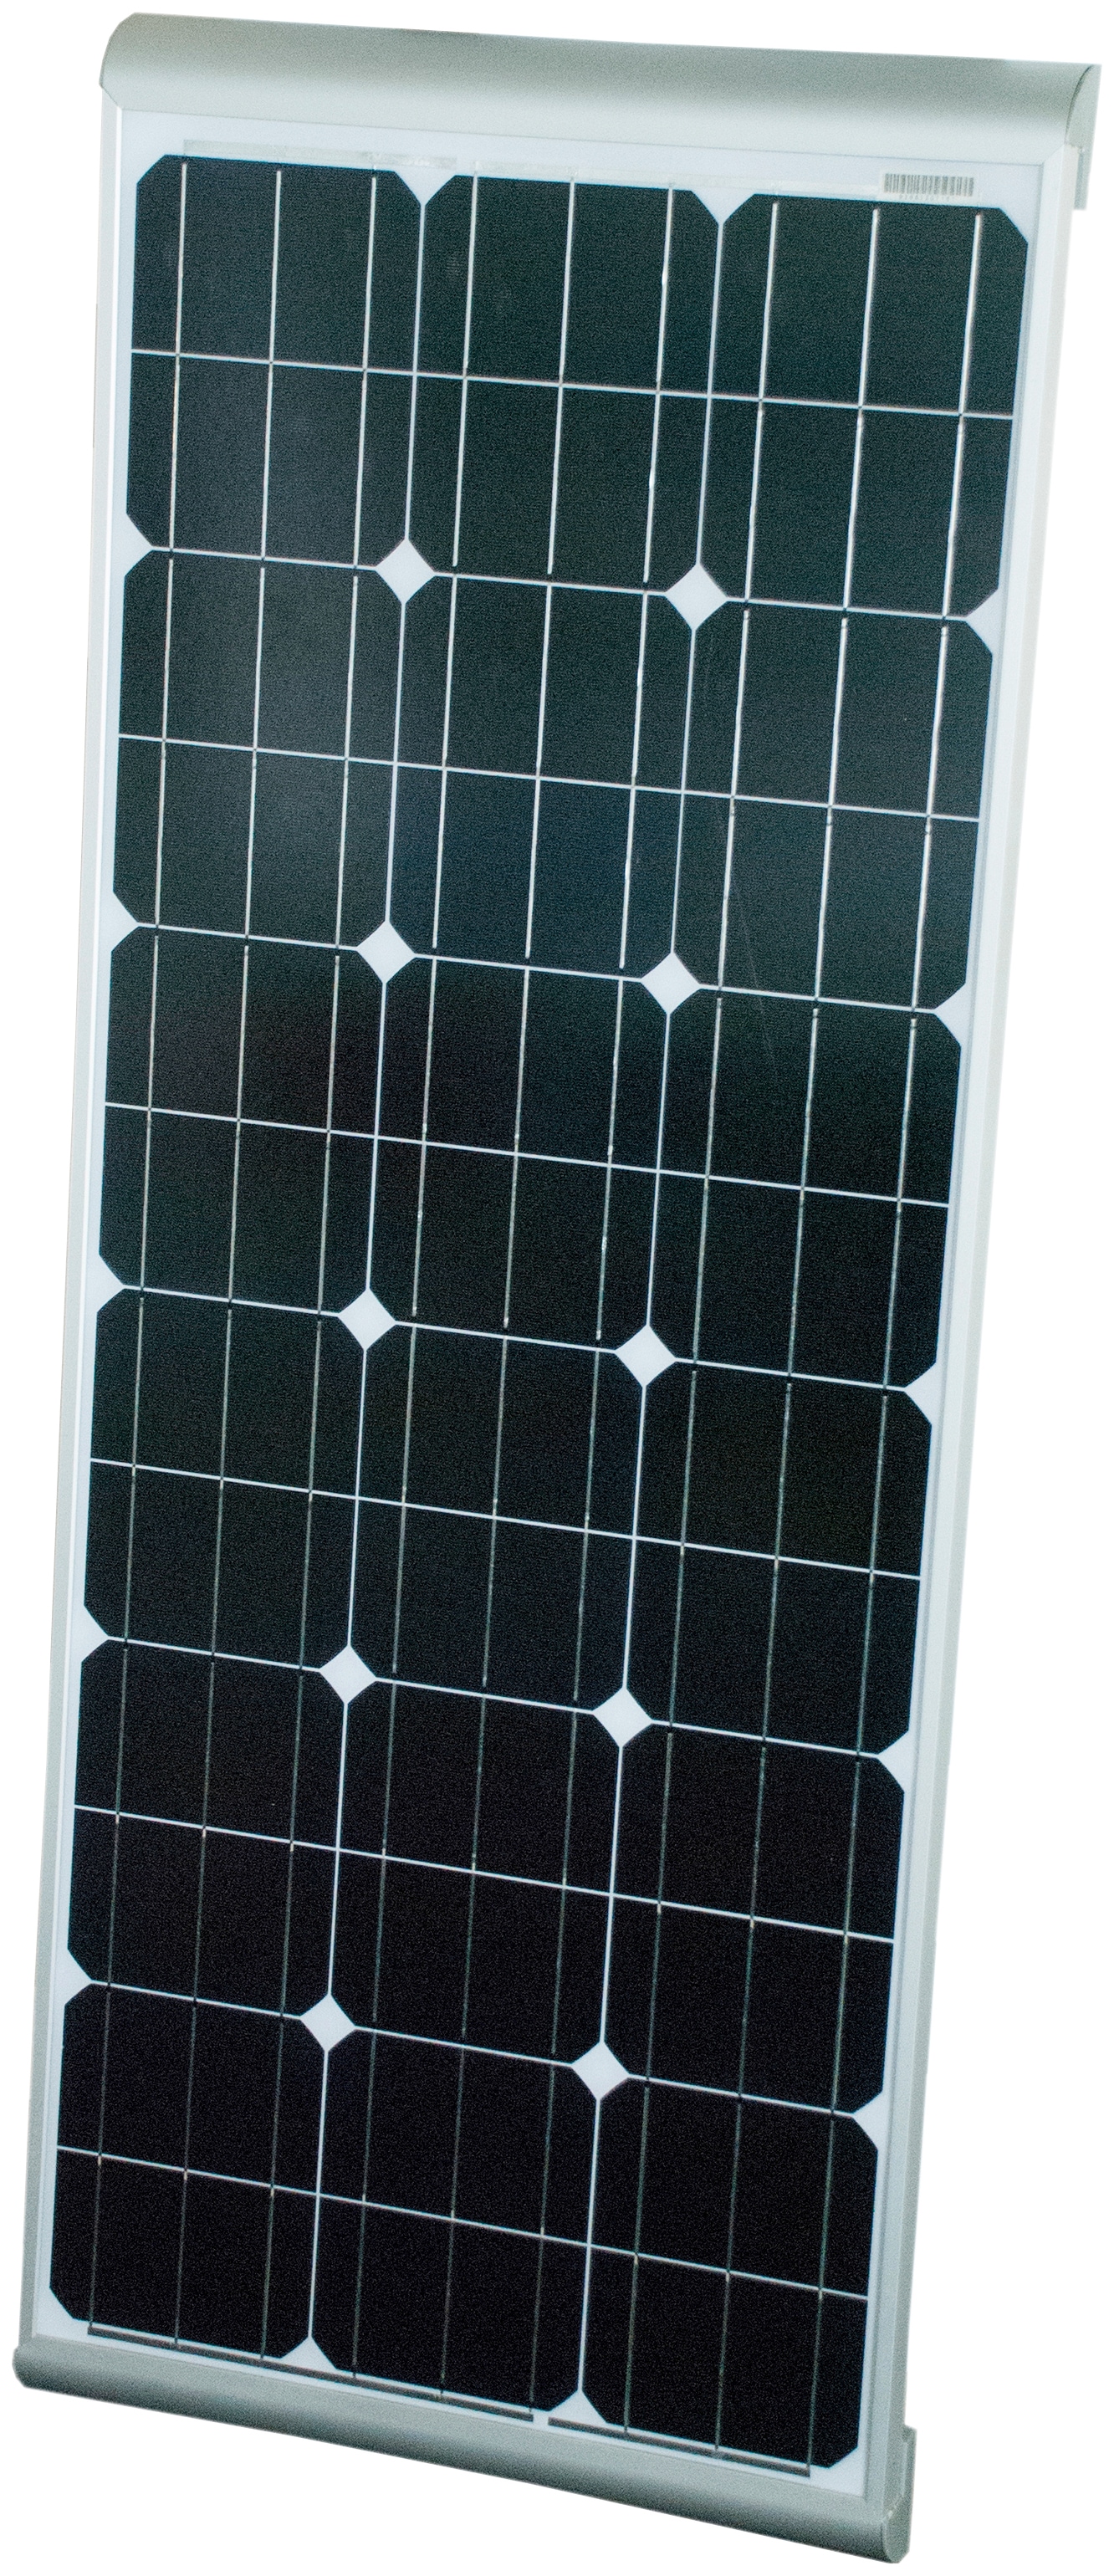 Phaesun Solarmodul "Sun Plus 120 Aero", 12 VDC, IP65 Schutz